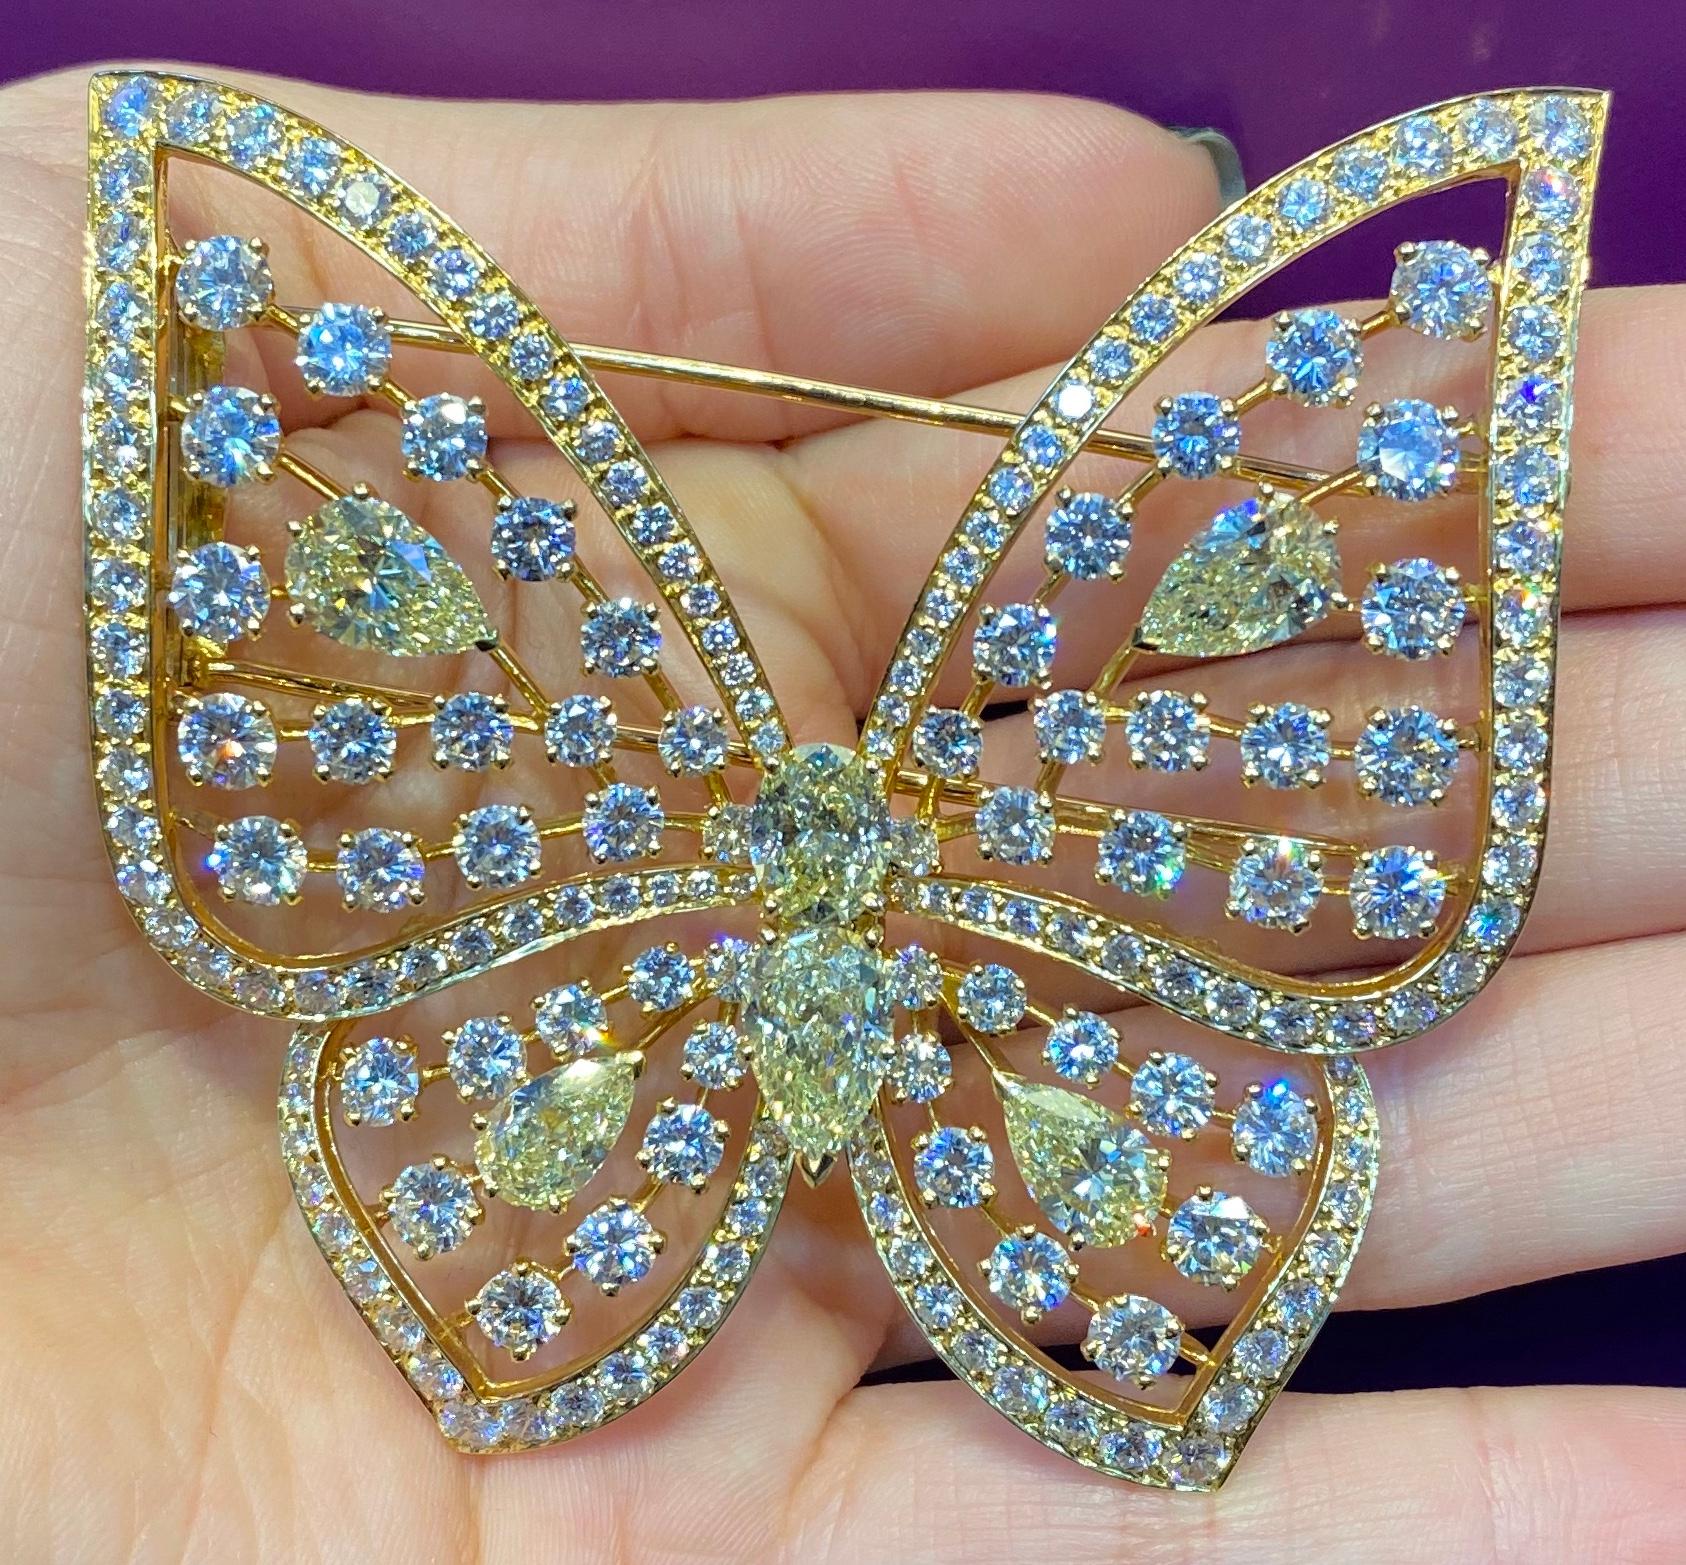 Pear Cut Large Size Fancy Diamond Butterfly Brooch by Van Cleef & Arpels